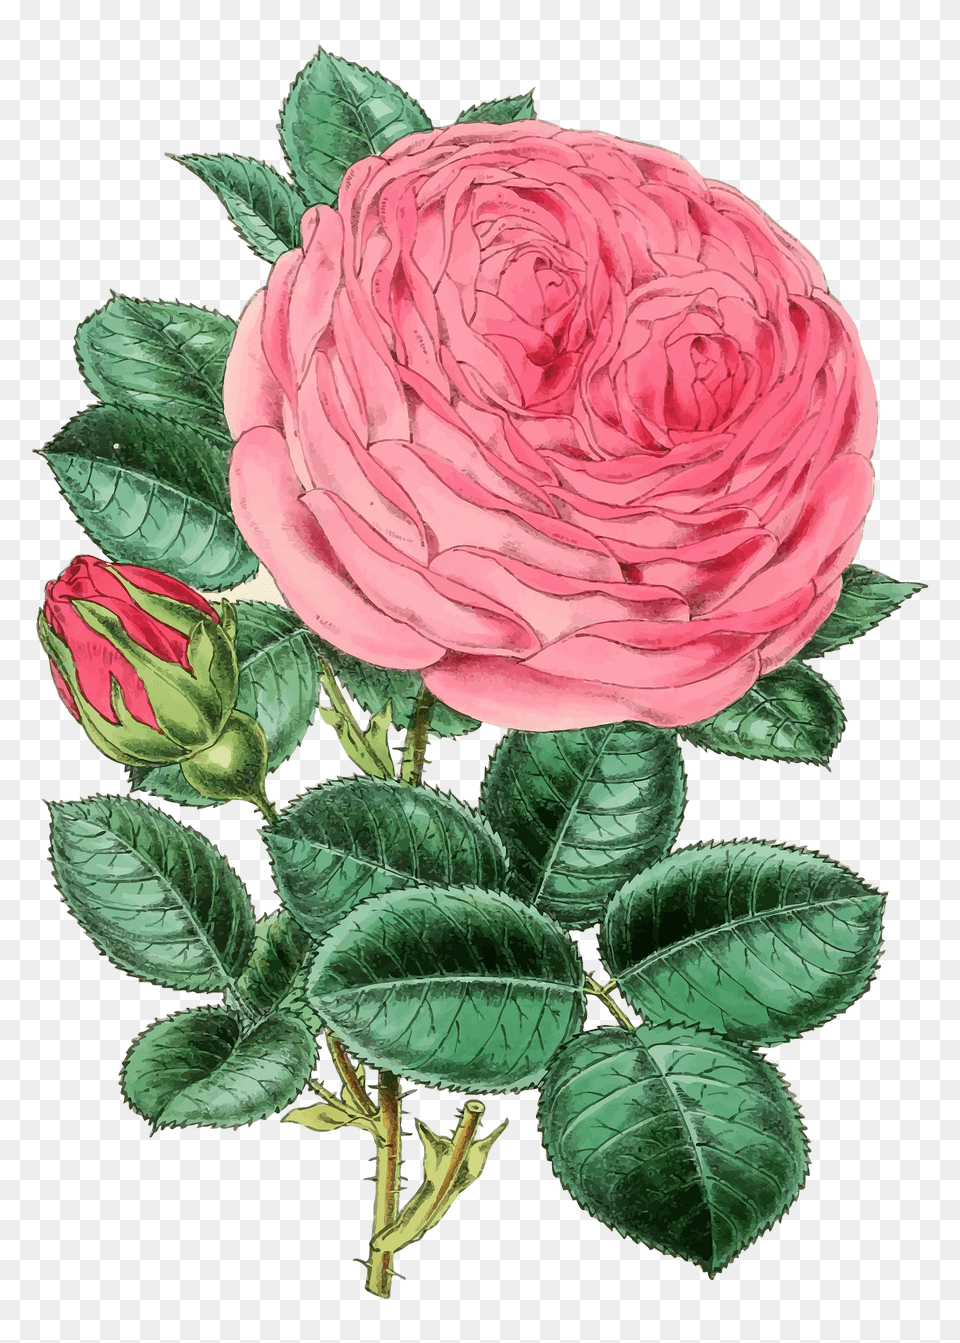 Vintage Rose Illustration 2 Clipart, Dahlia, Flower, Plant, Pattern Png Image